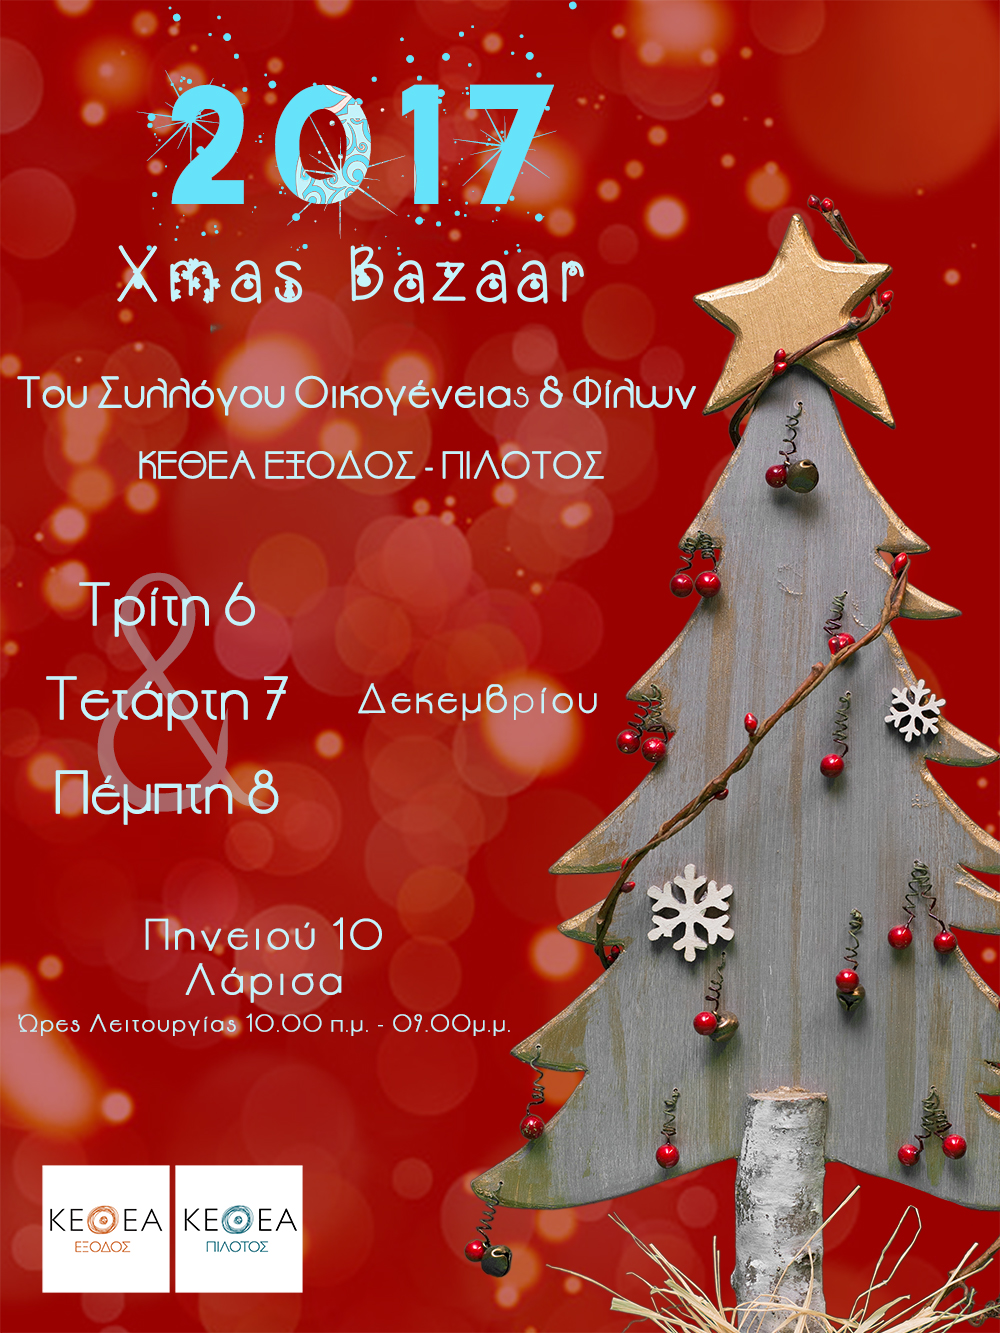 Χριστουγεννιάτικο Bazaar Συλλόγου Οικογένειας & Φίλων ΚΕΘΕΑ ΕΞΟΔΟΣ & ΚΕΘΕΑ ΠΙΛΟΤΟΣ